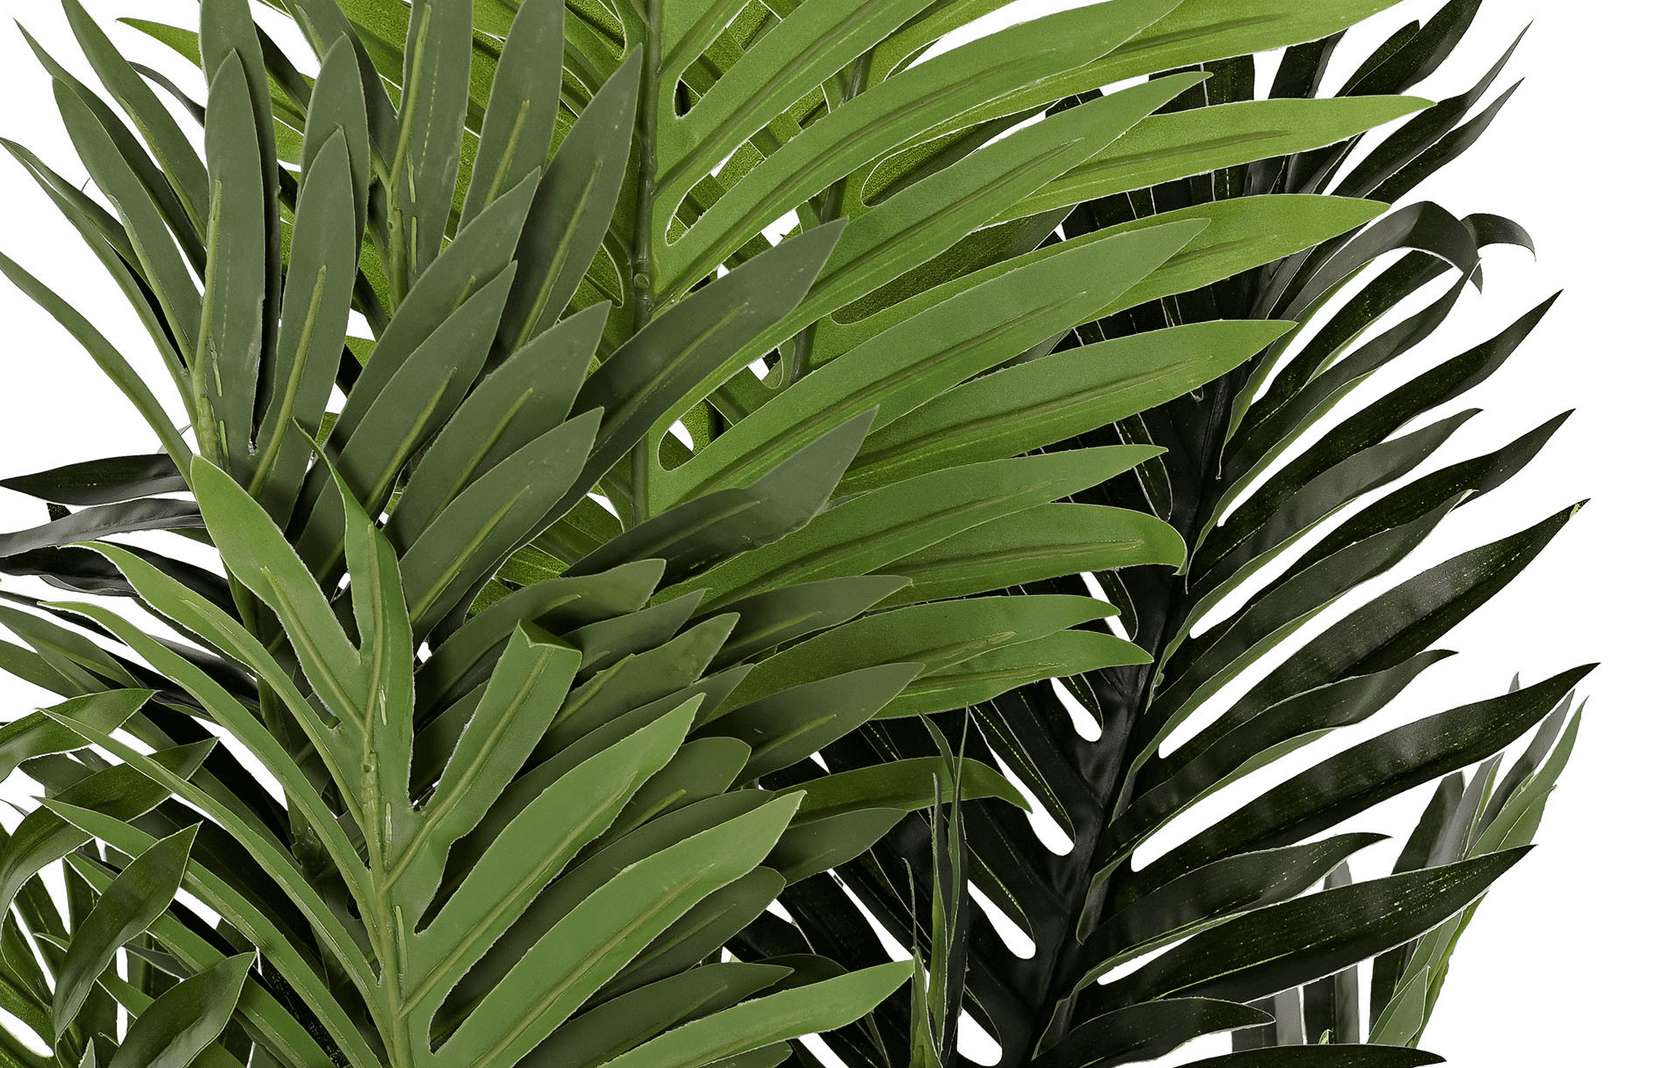 Palmeira verde 40*100 alt em vaso